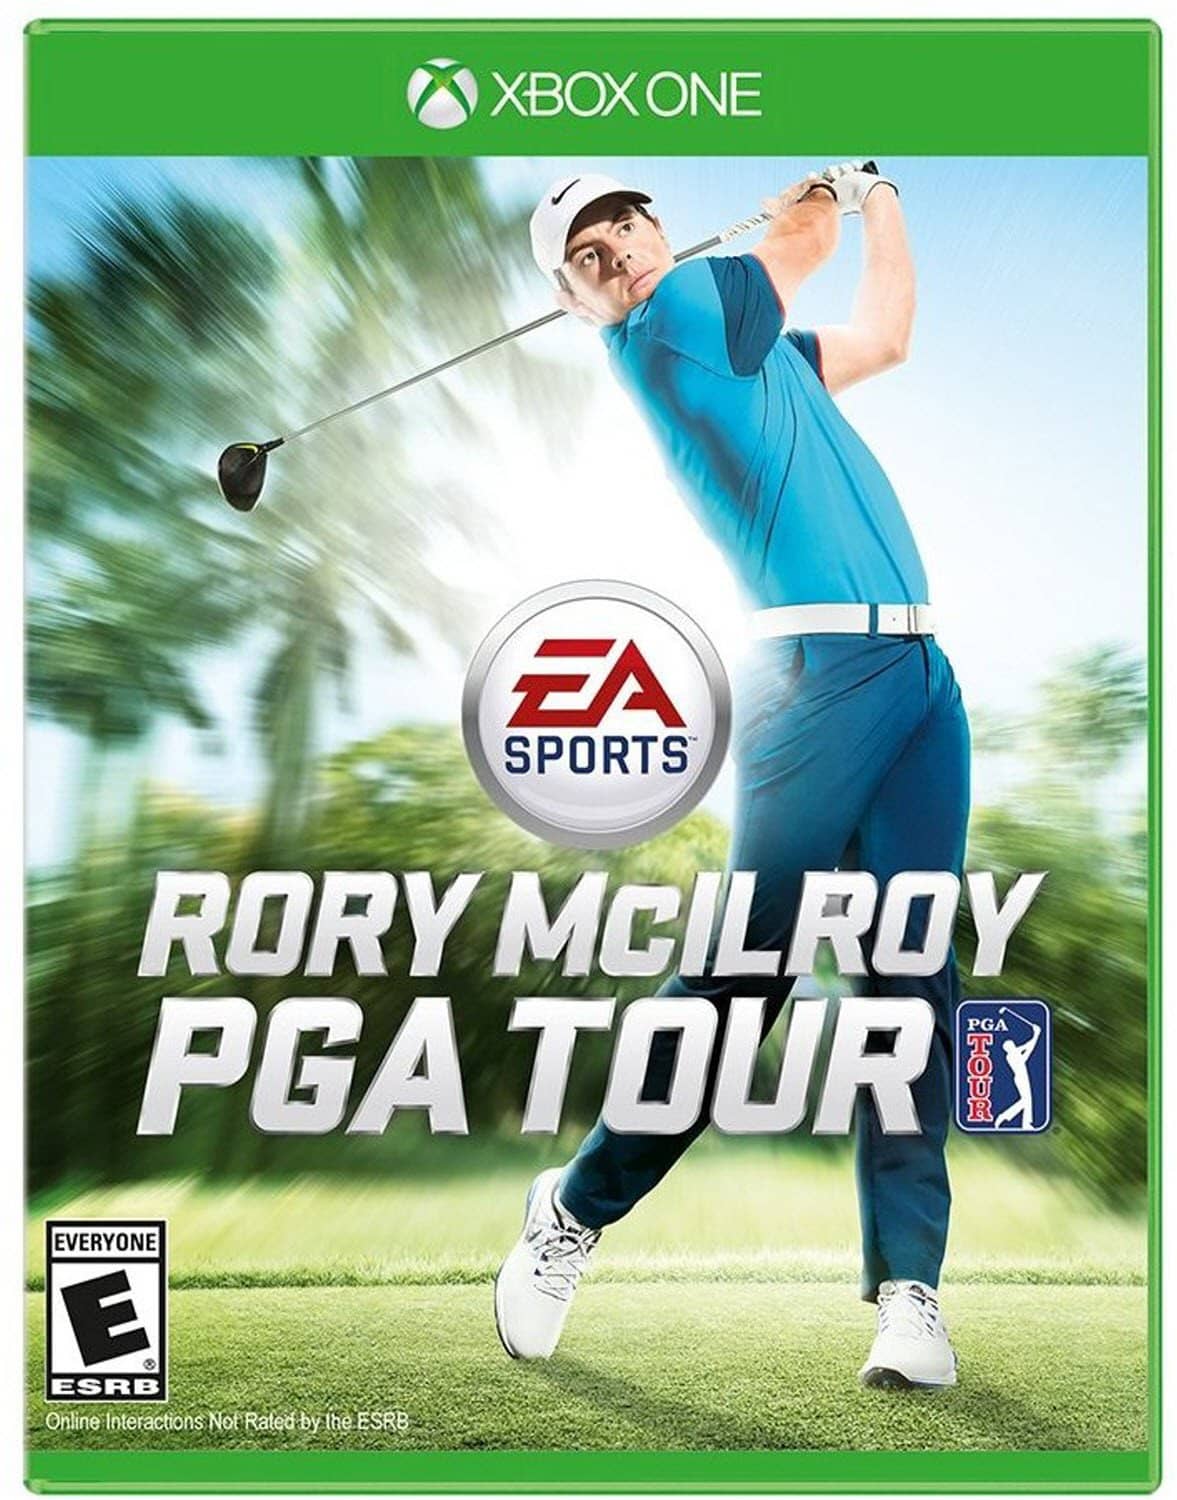 EA SPORTS Rory McIlroy PGA TOUR - Xbox One